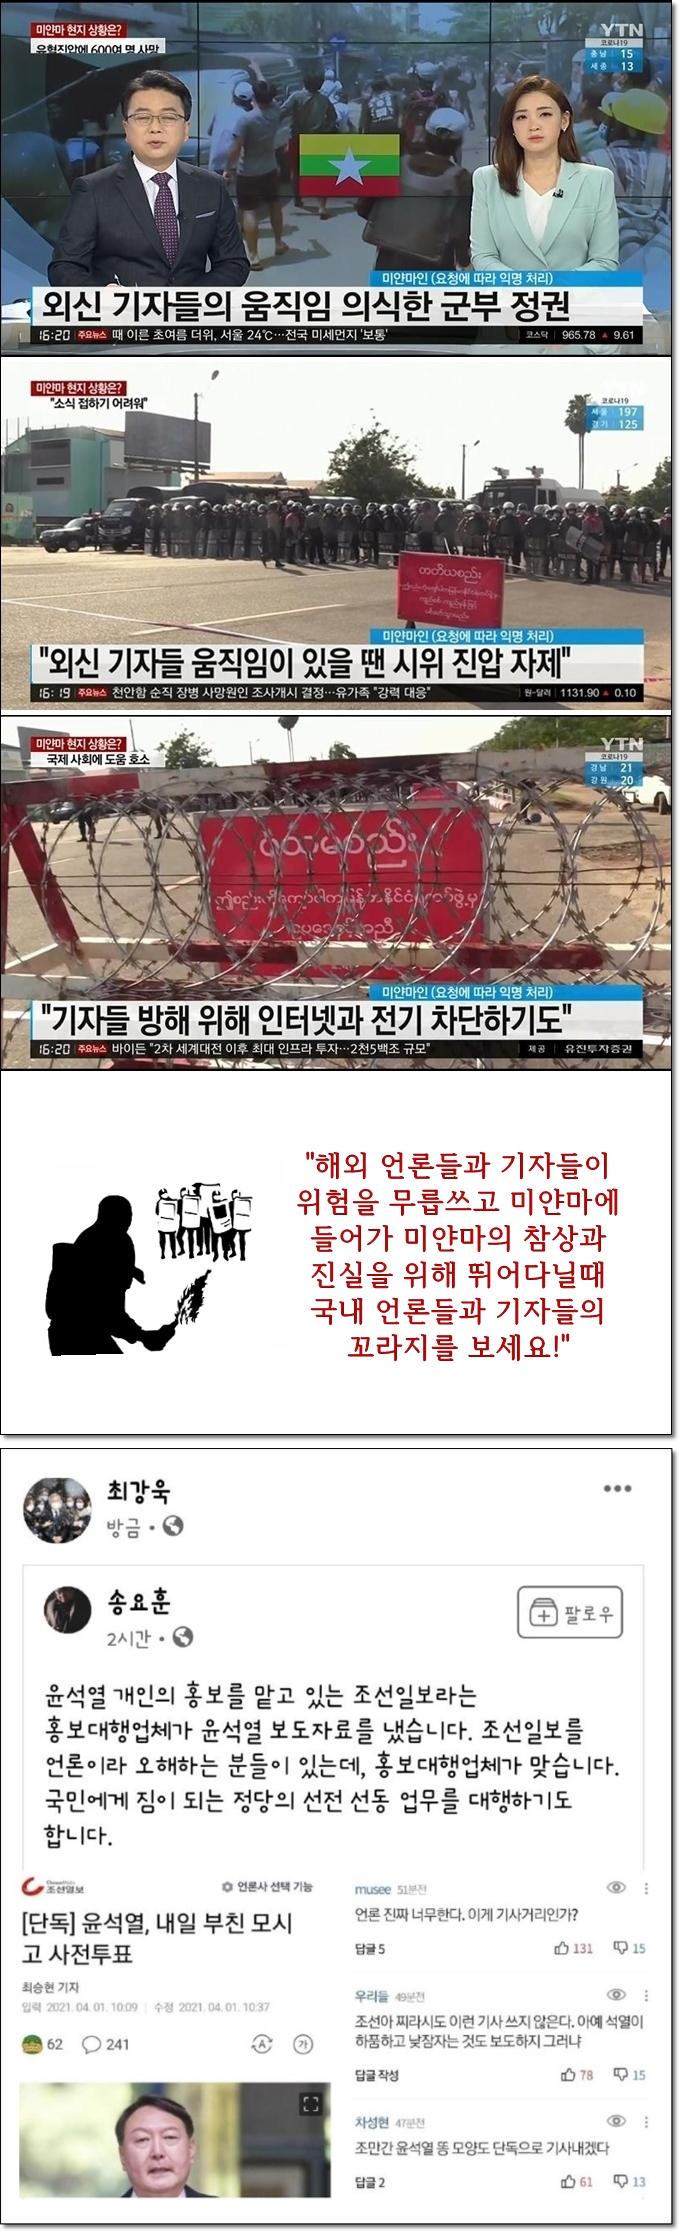 해외 언론과 한국언론의 비교.jpg